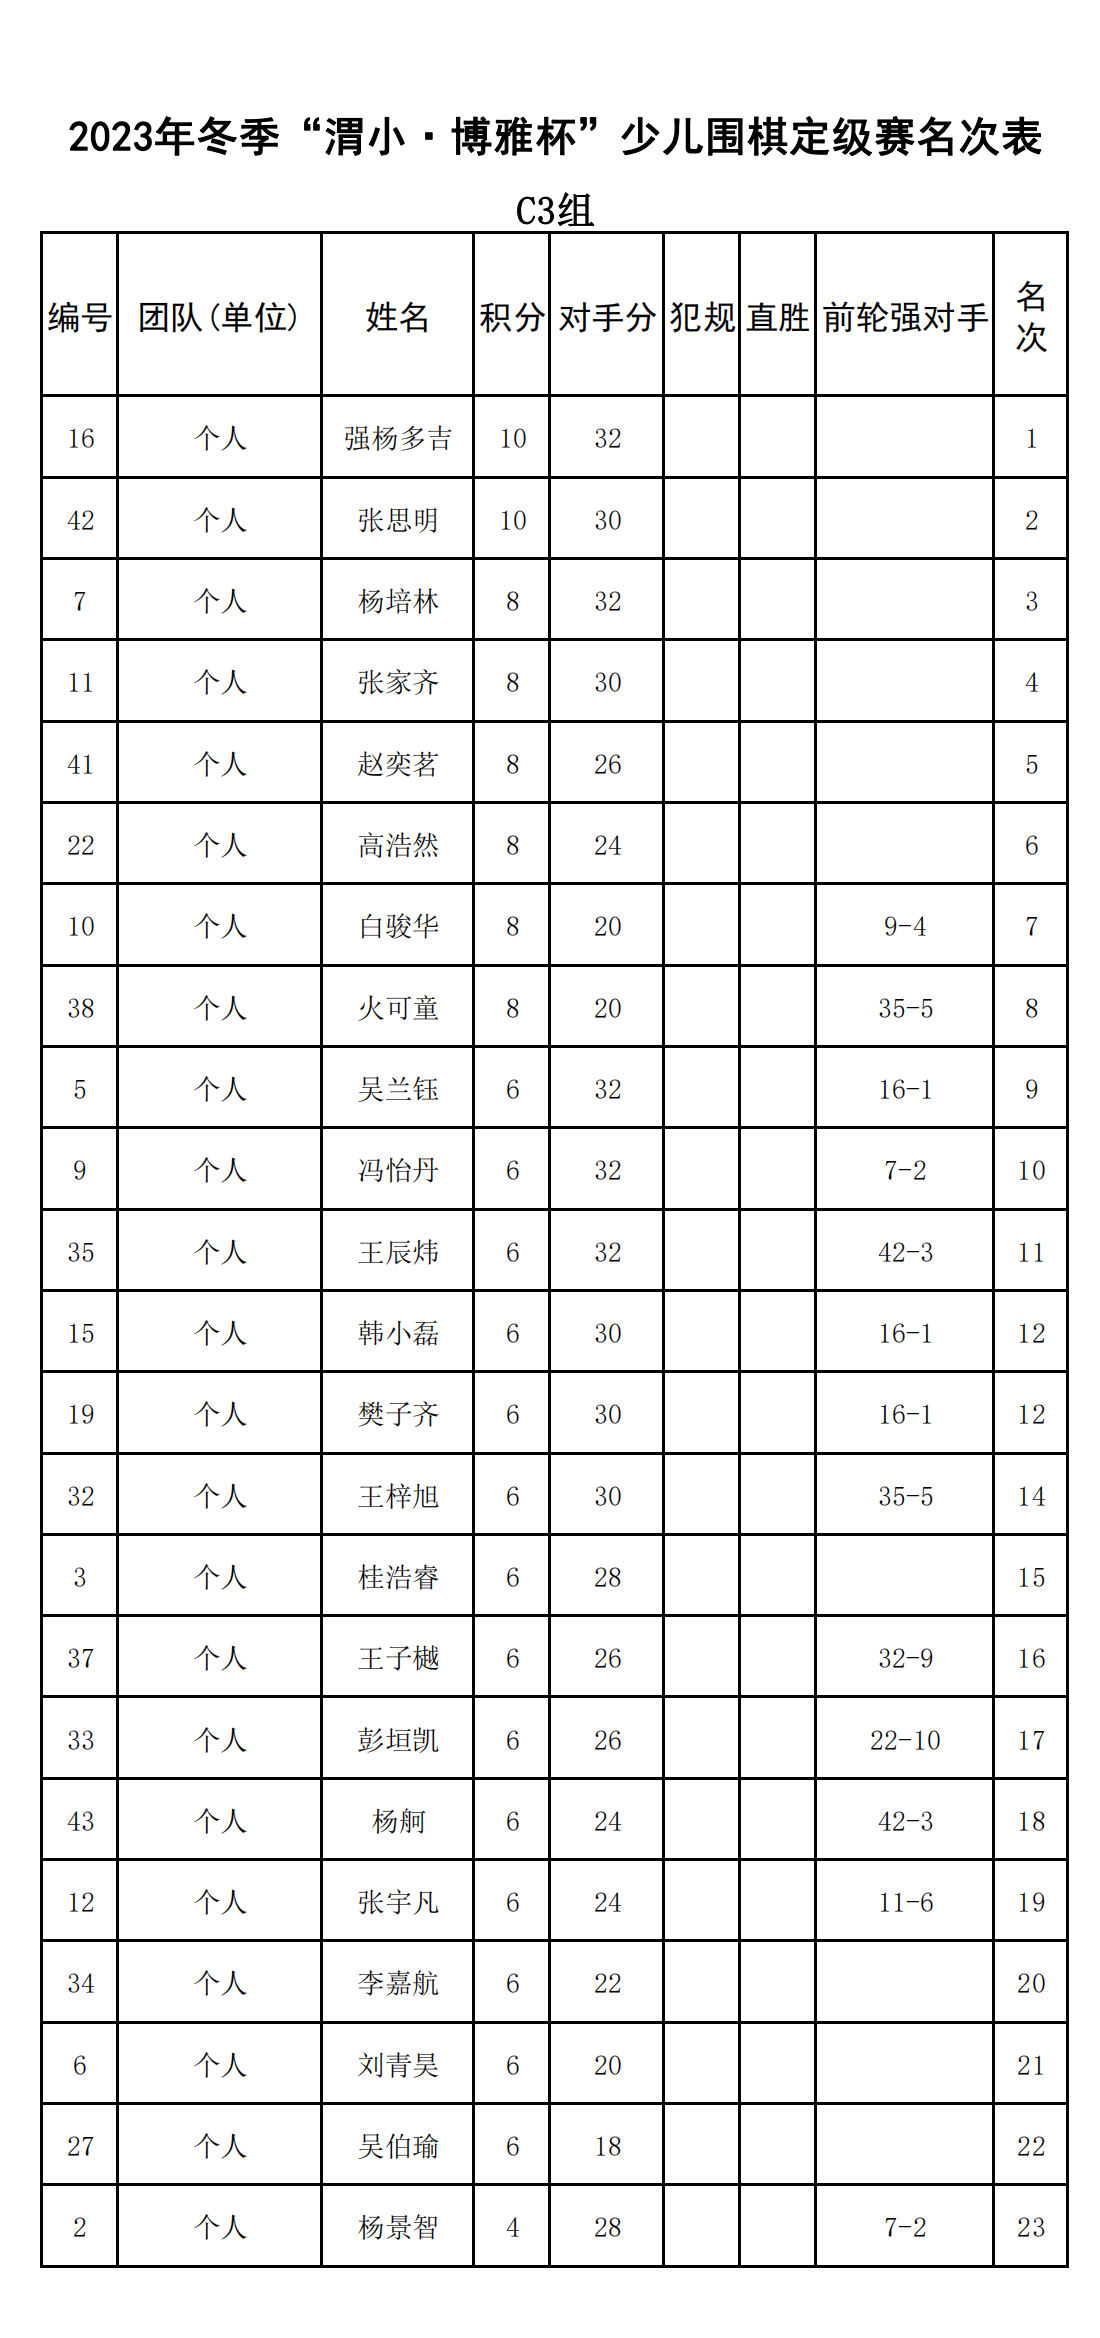 2023年冬季“渭小·博雅杯”少儿围棋定级赛C3组(名次表)_00.png